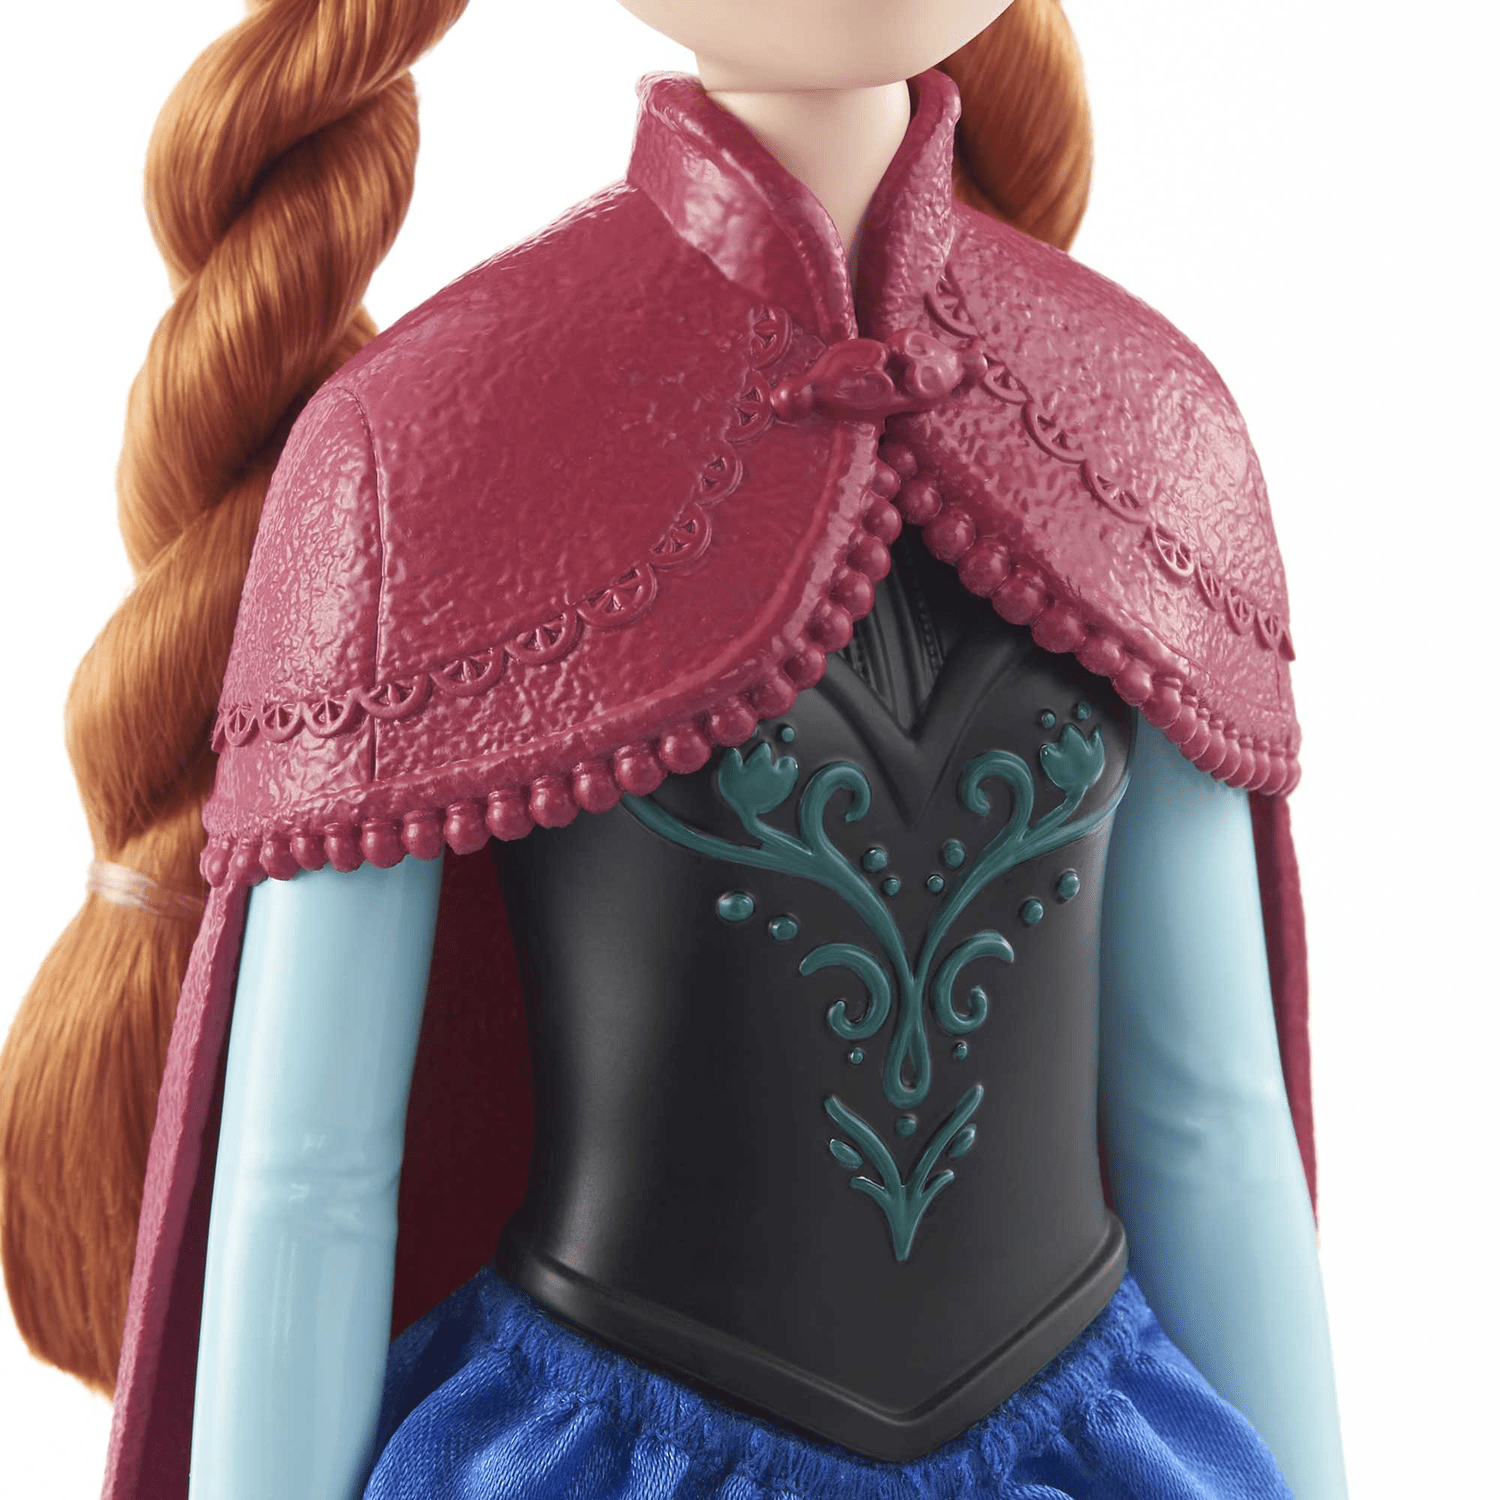 Boneca Disney Frozen Princesa Anna